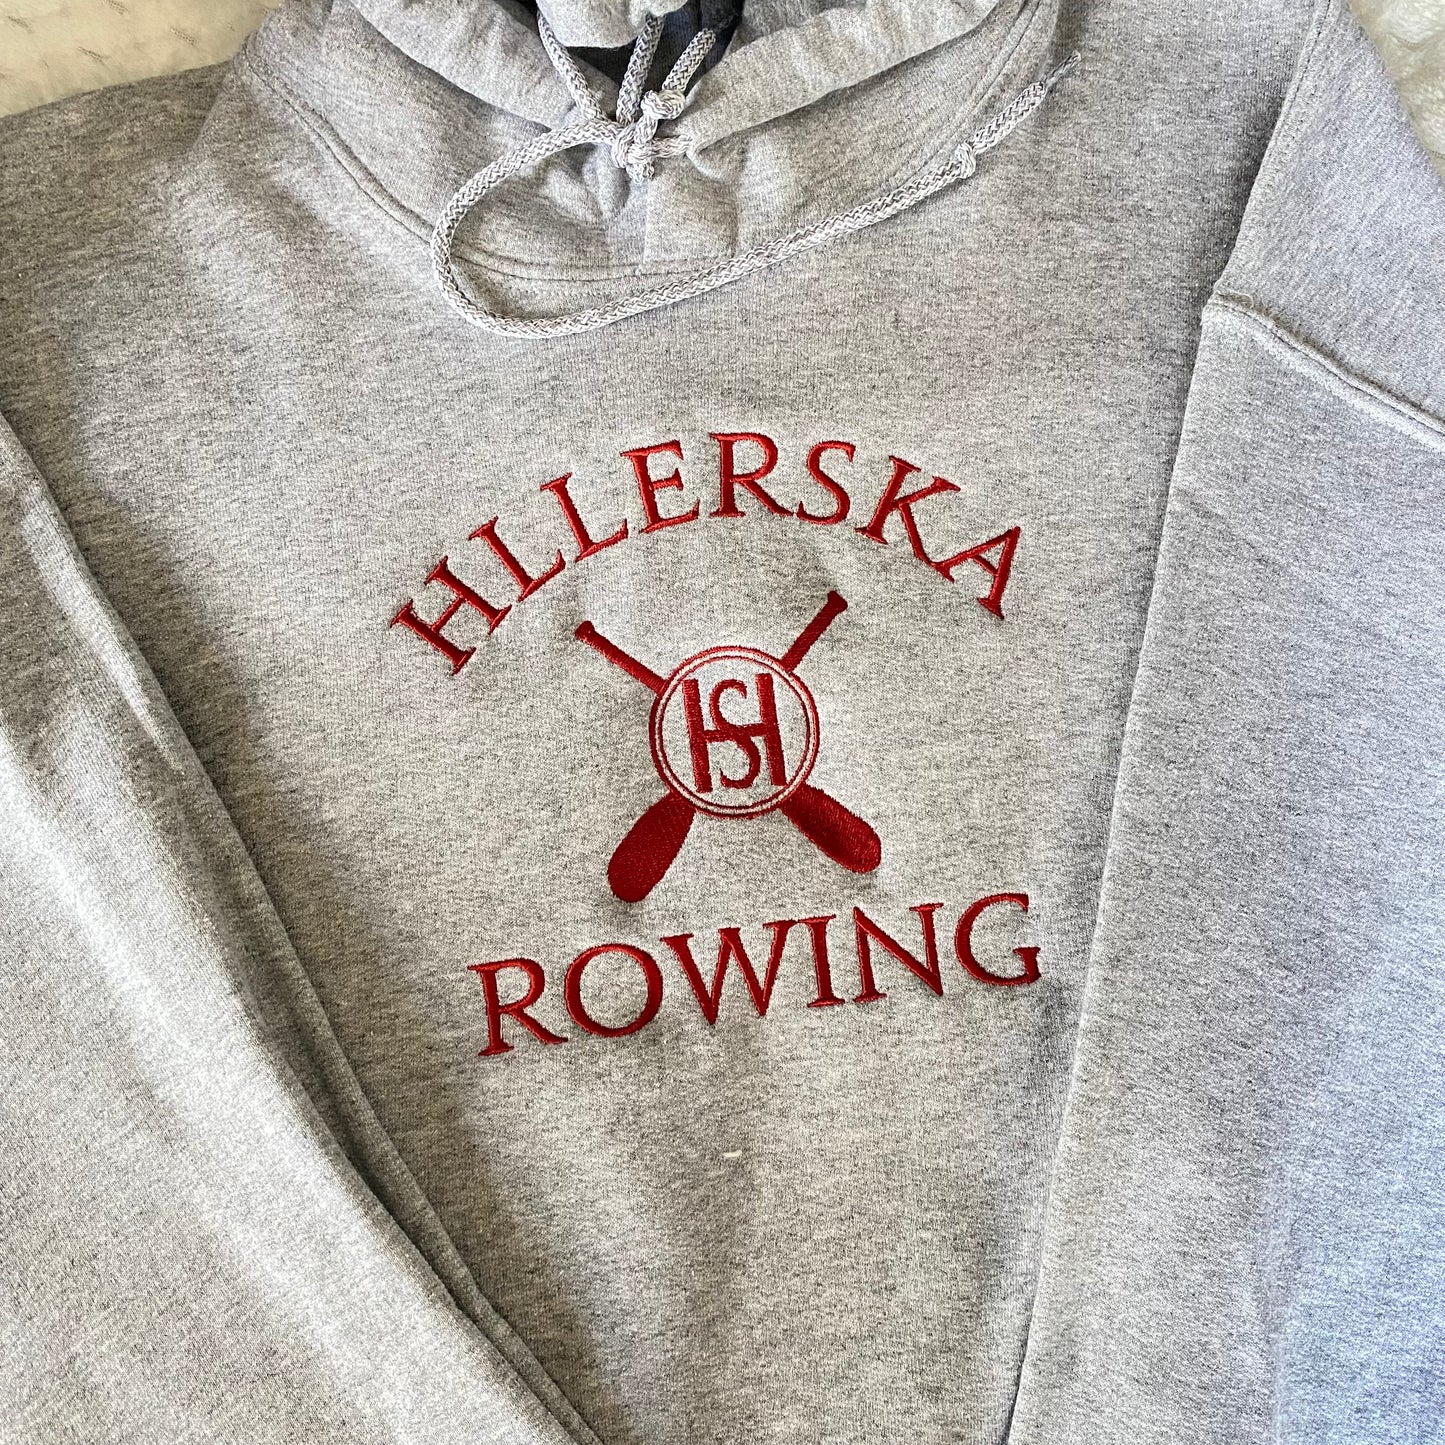 Hillerska Skolan Rowing